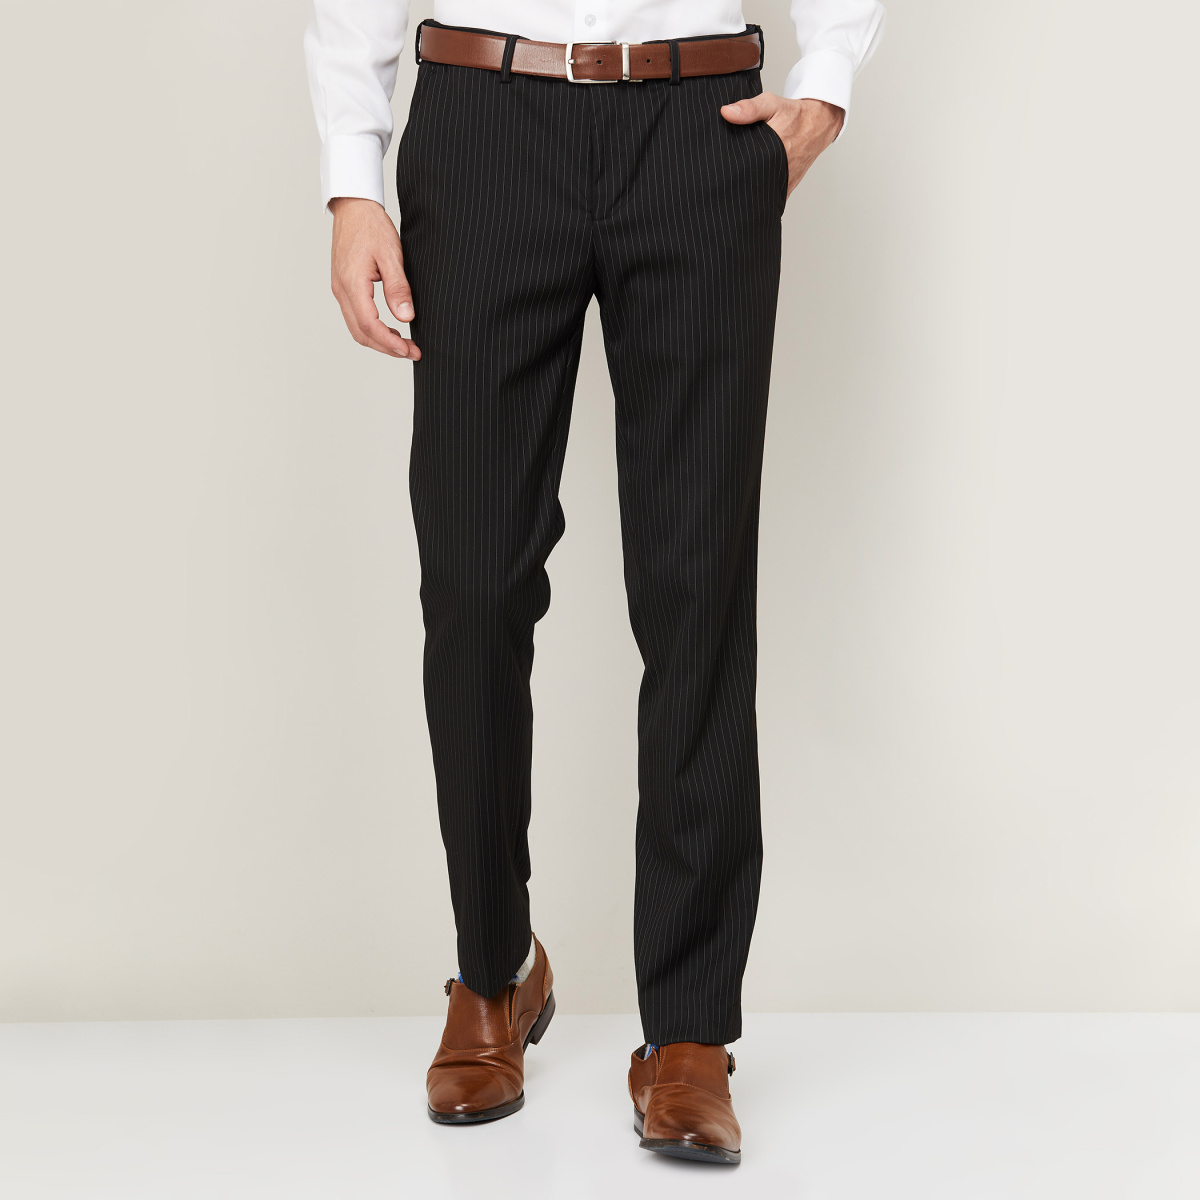 Men Slim Capri Pants Crop Leg Tapered Trousers Fit Formal Business Smart  Pants | eBay